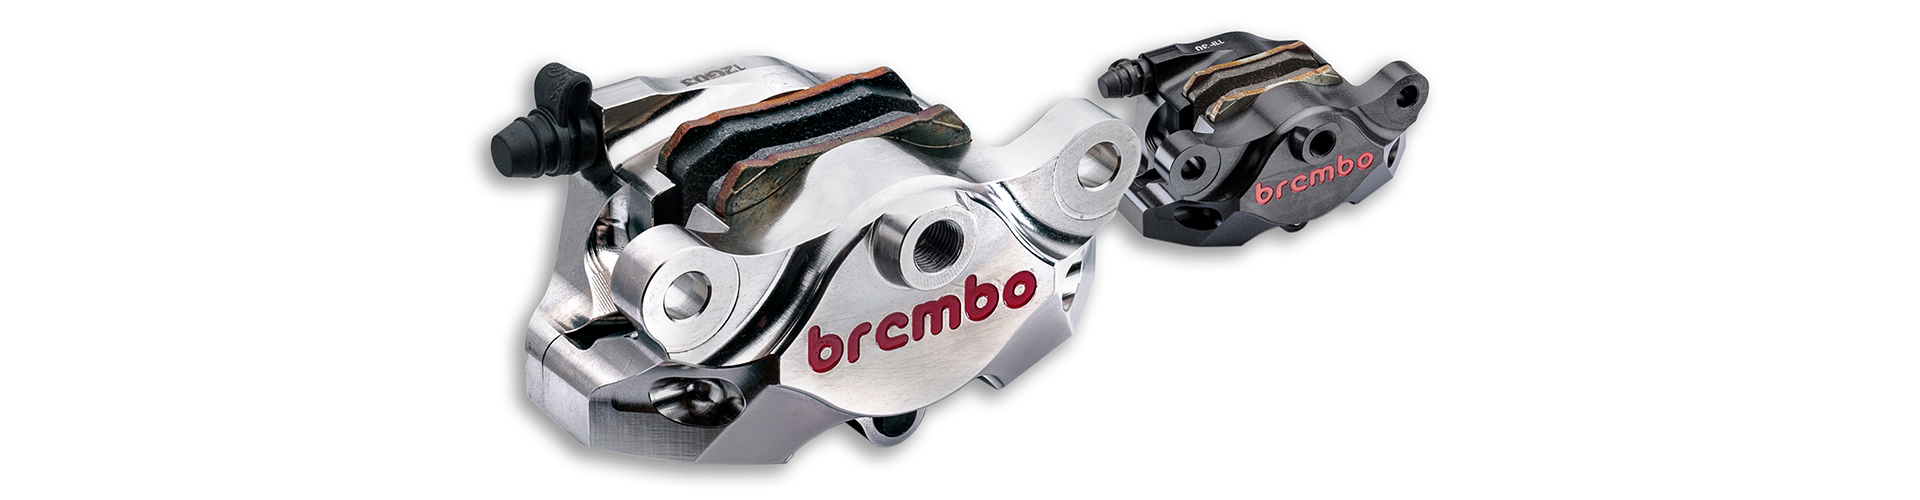 Brembo-Racing-Pinze-Assiali